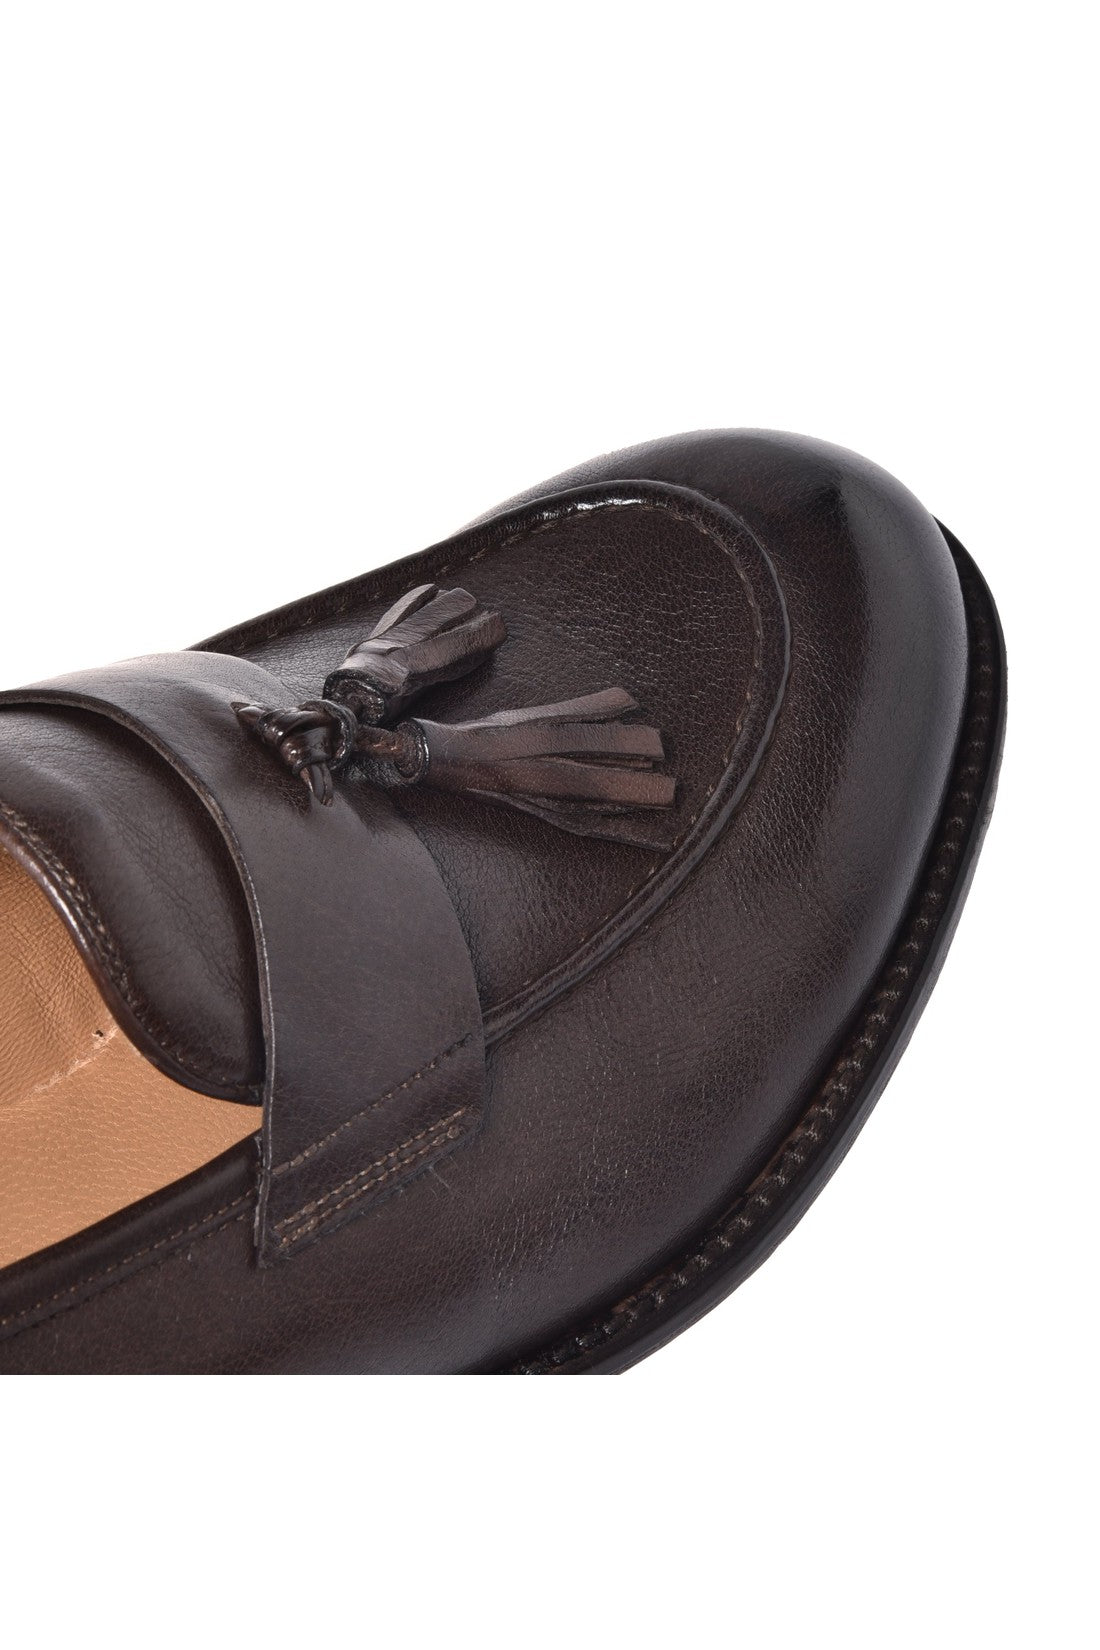 Loafer in dark brown calfskin